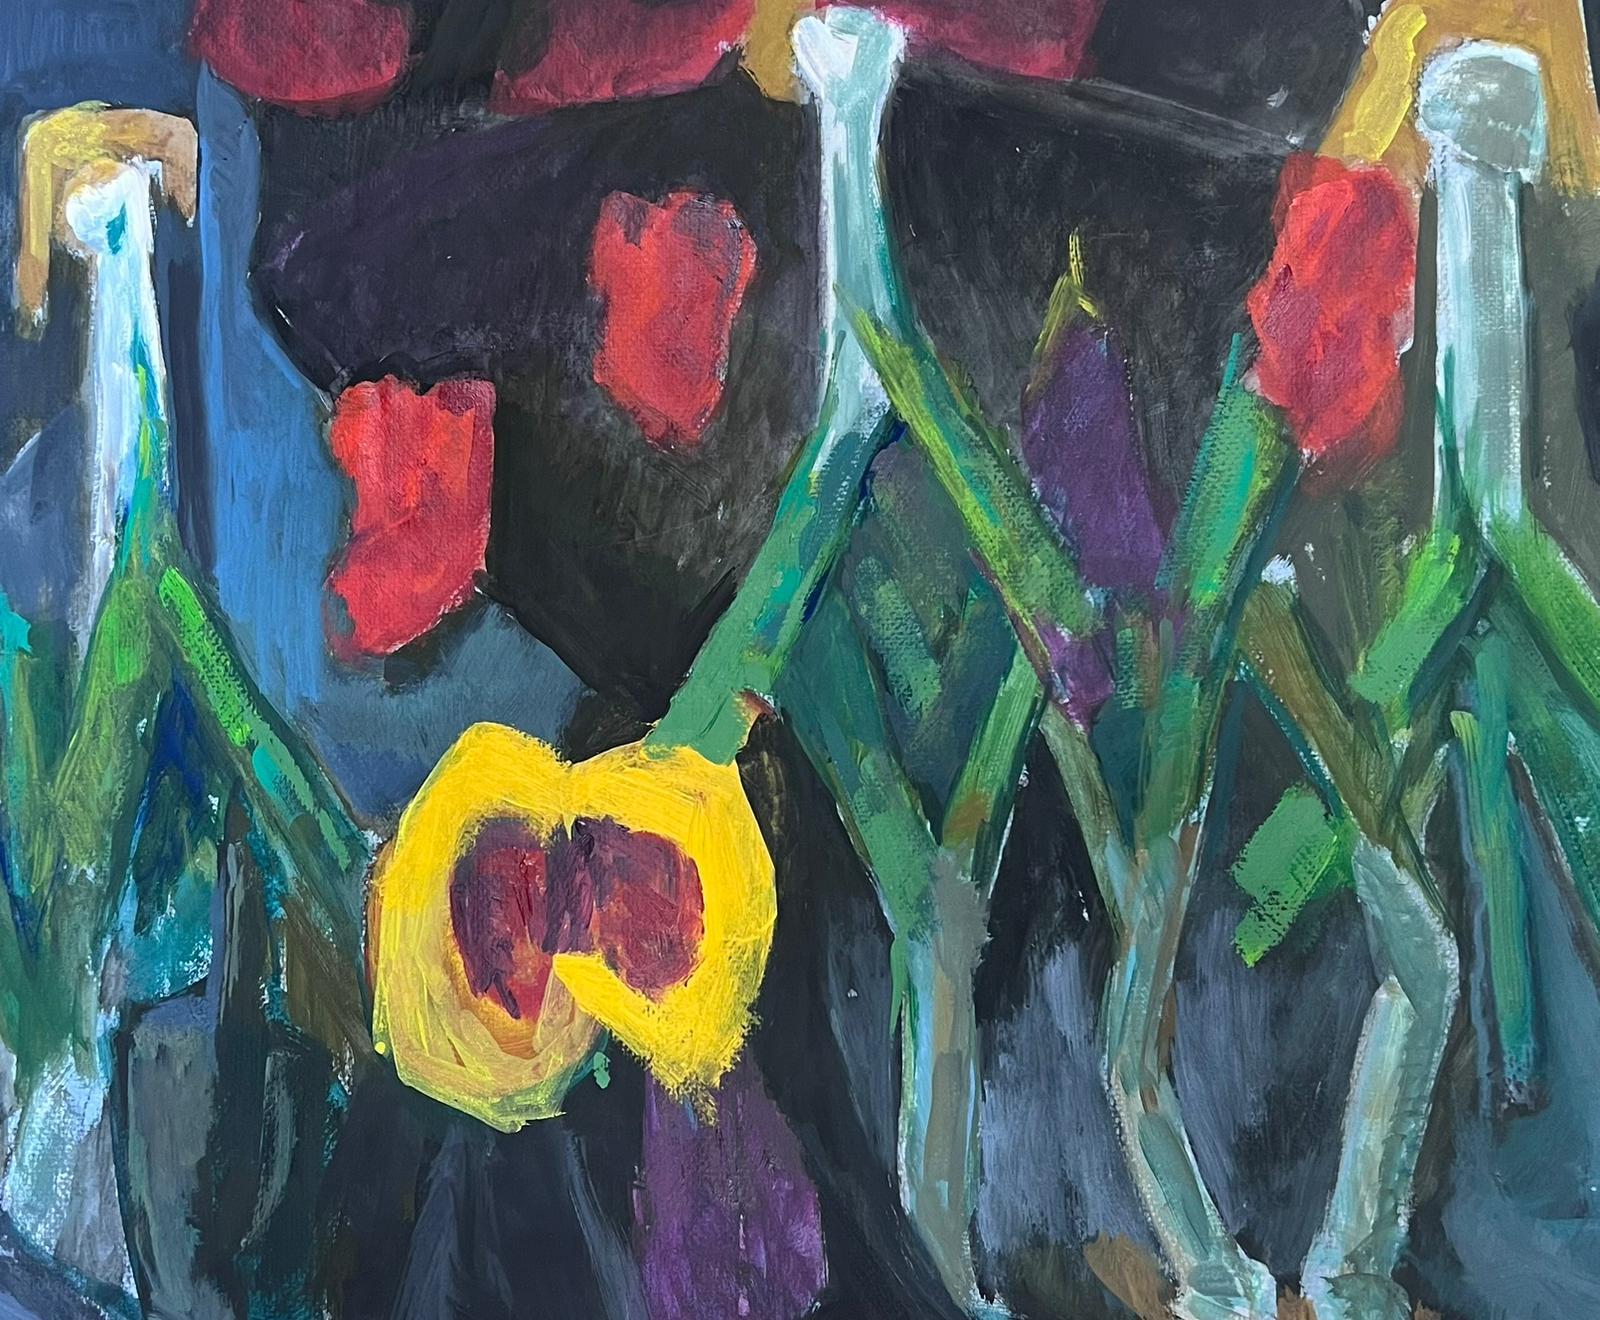 Abstraktes Gemüse
von Guy Nicod
(Französisch 1923 - 2021)
Öl auf Künstlerpapier, ungerahmt
Gemälde : 19,5 x 24 Zoll
Herkunft: Künstlernachlass, Frankreich
Zustand: sehr guter und gesunder Zustand